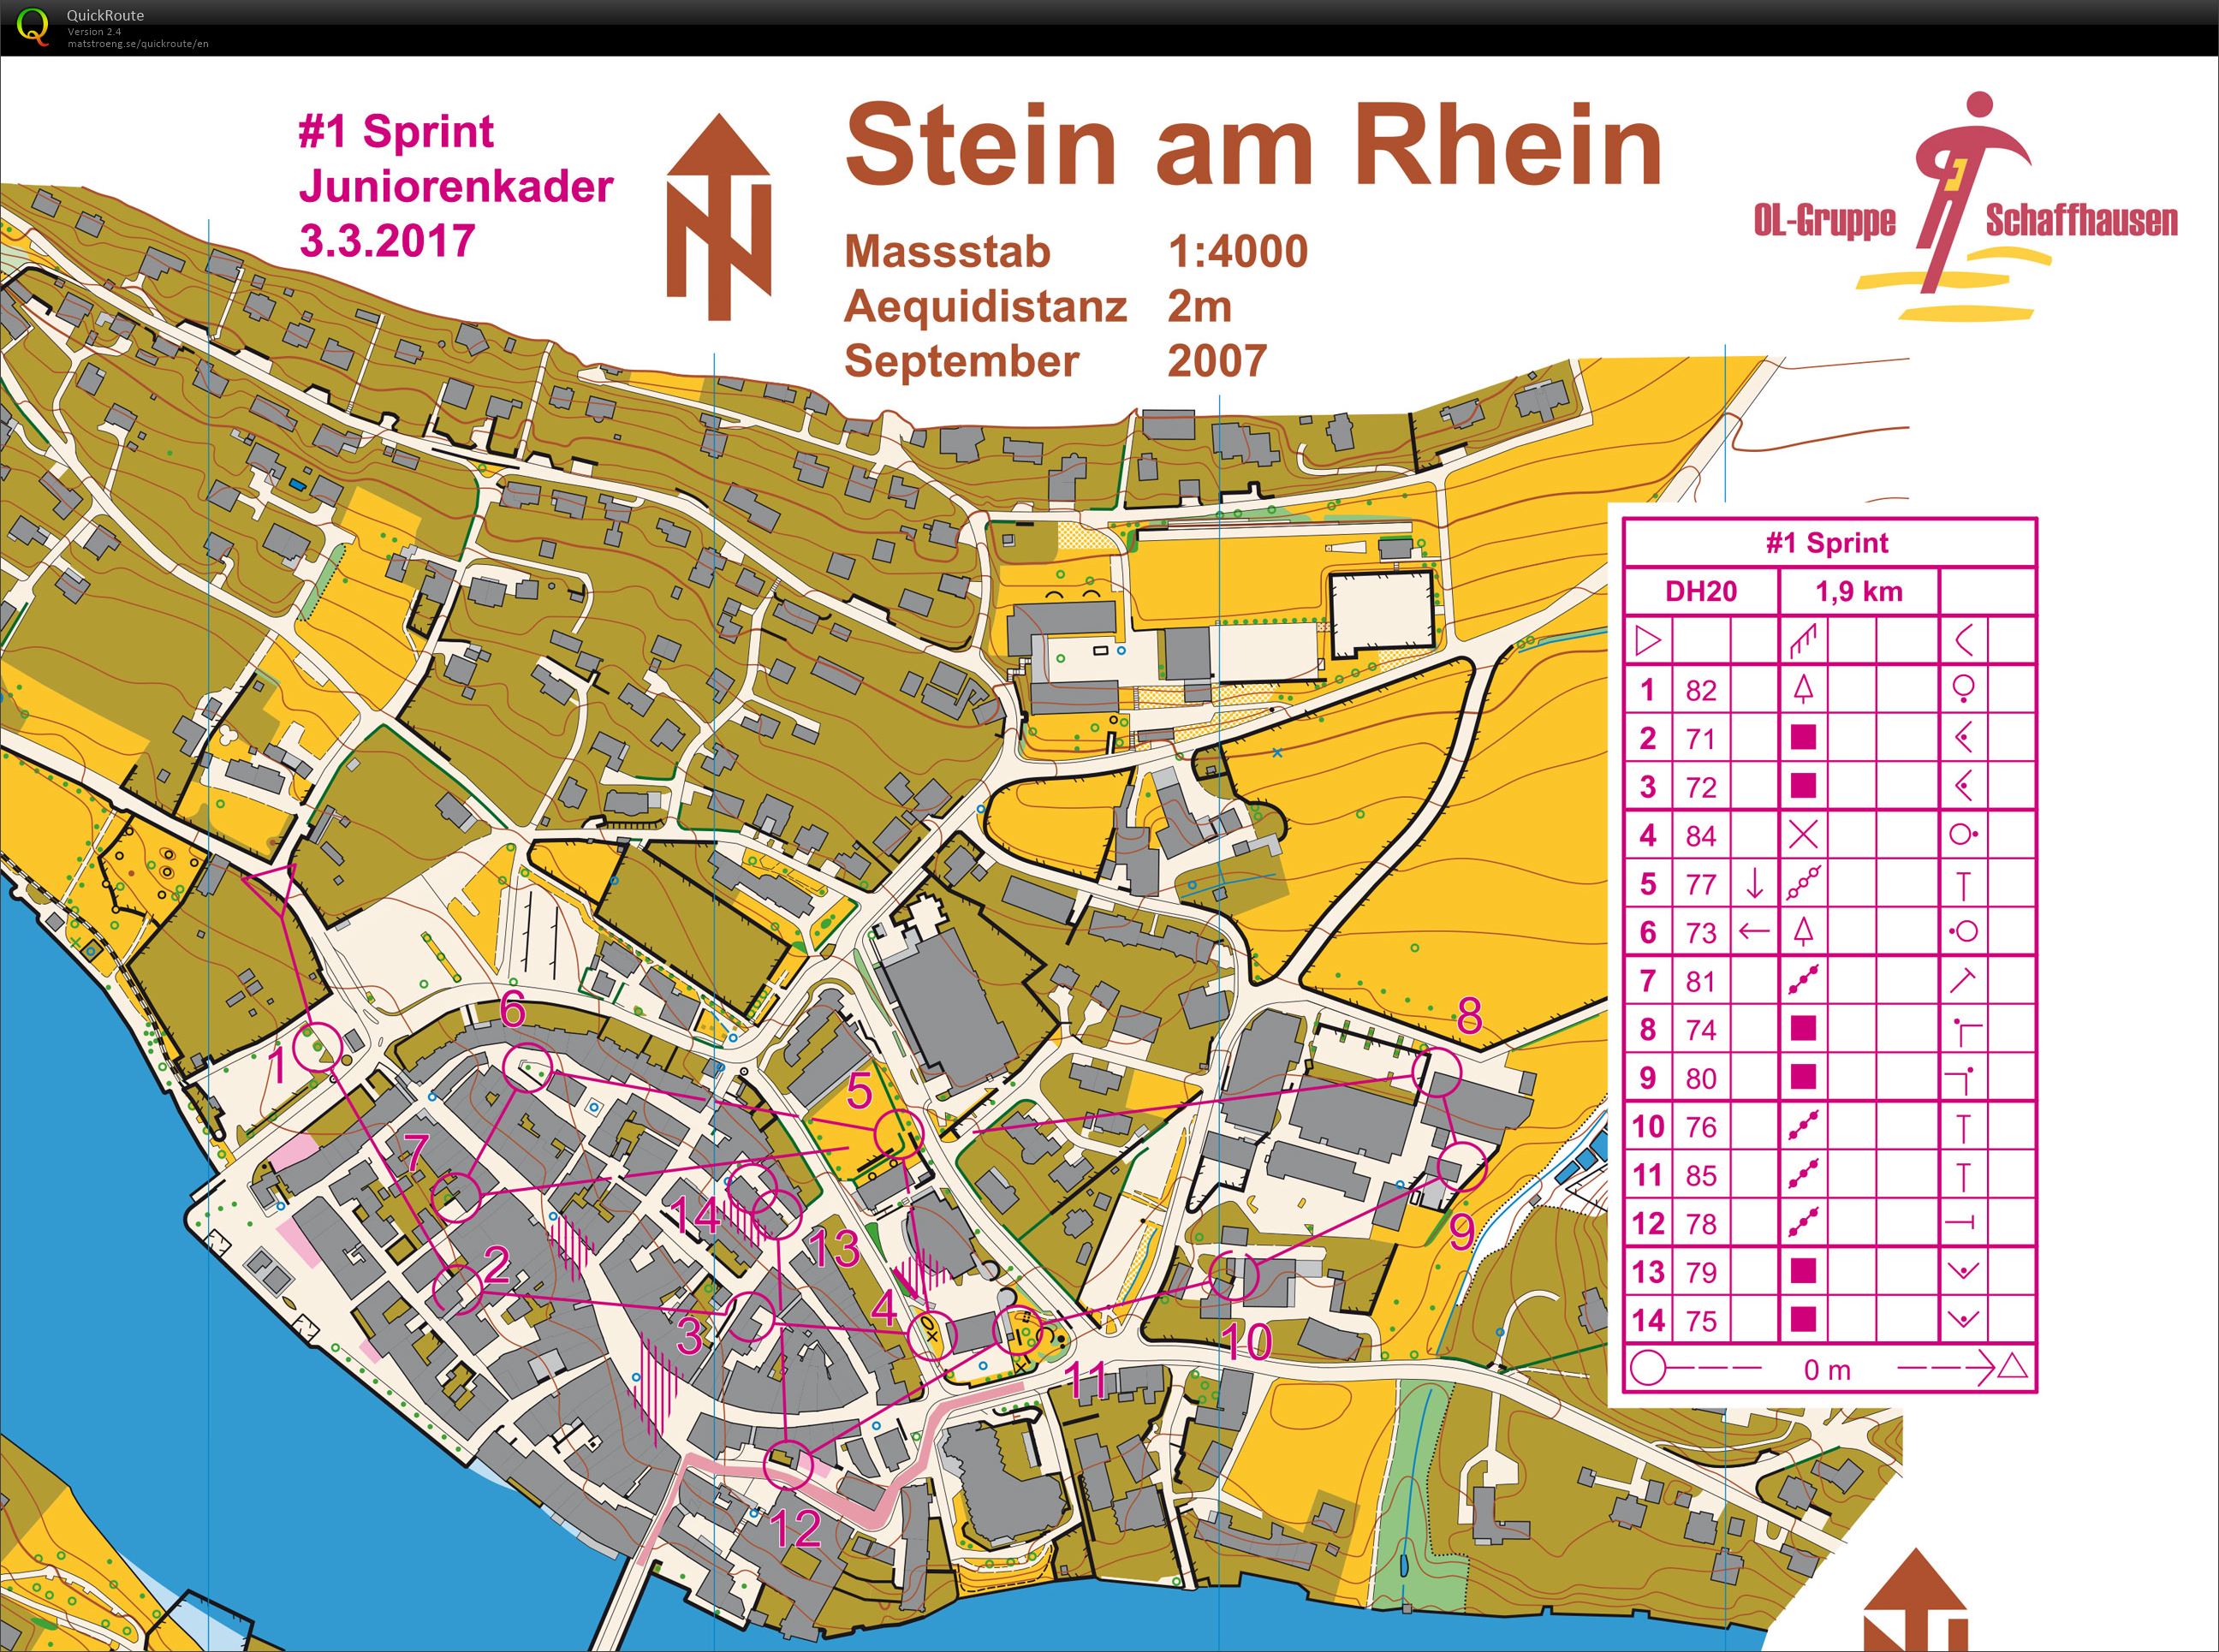 Stein am Rhein (24-07-2020)